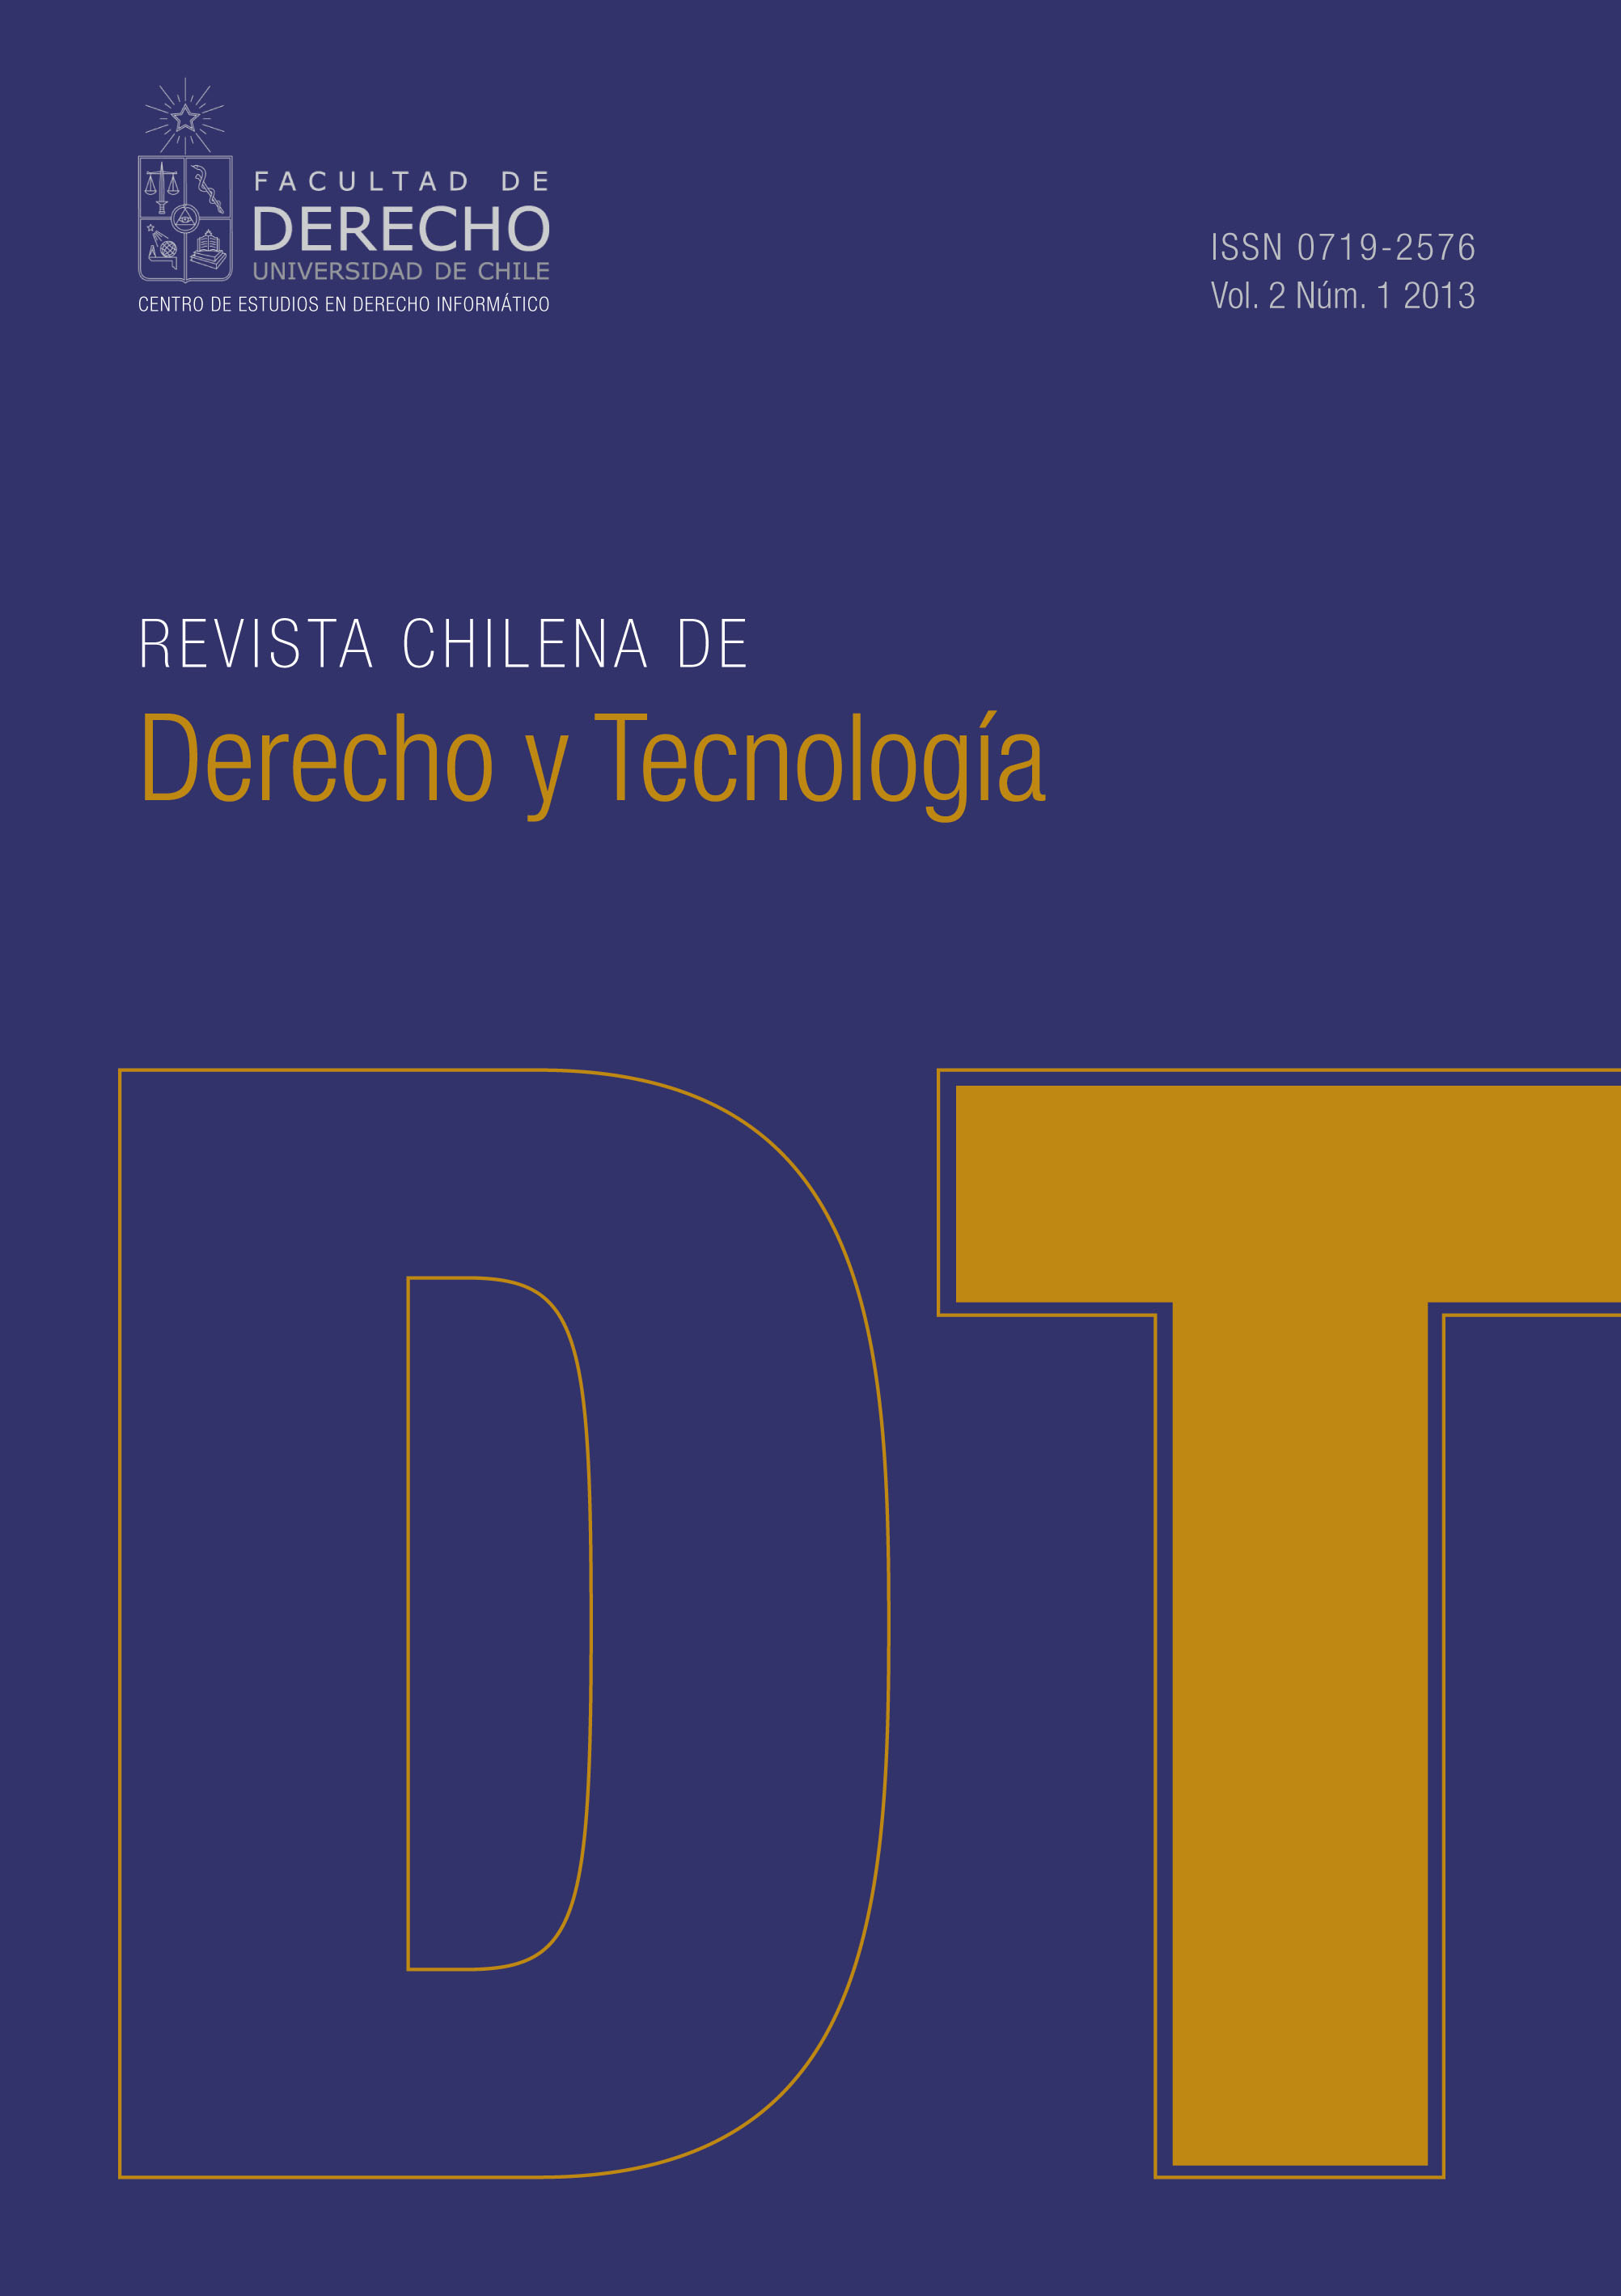 Revista de Chilena de Derecho y Tecnología